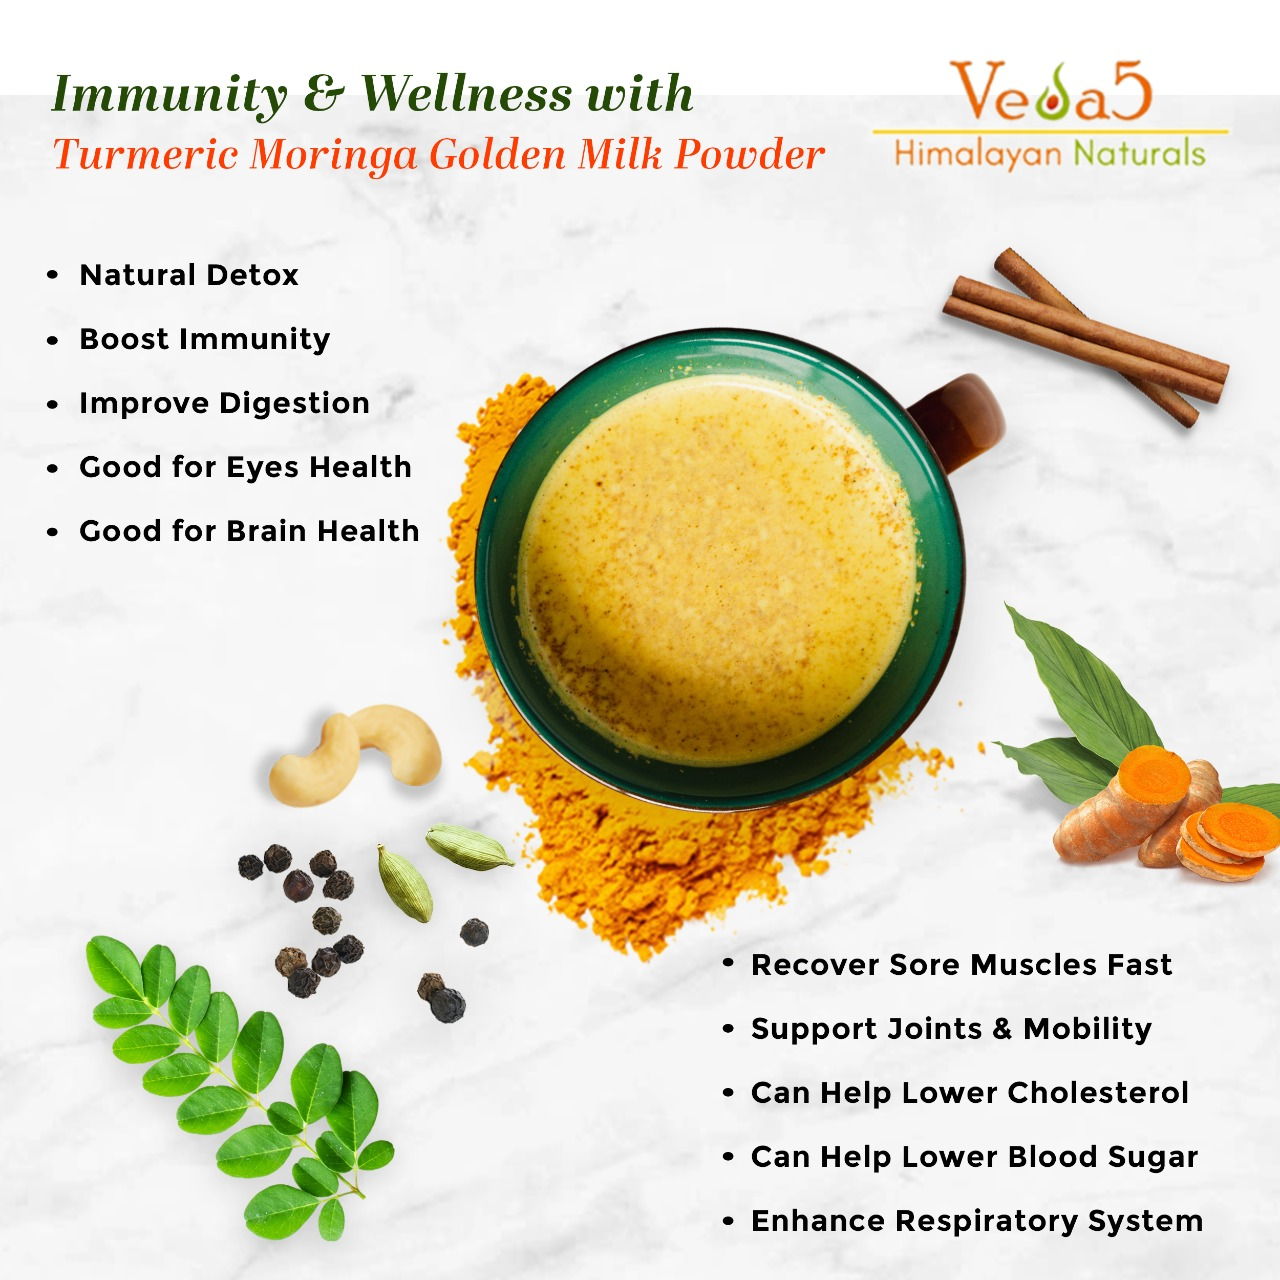 Turmeric Moringa Golden Milk Powder Benefits Veda5 Himalayan Naturals